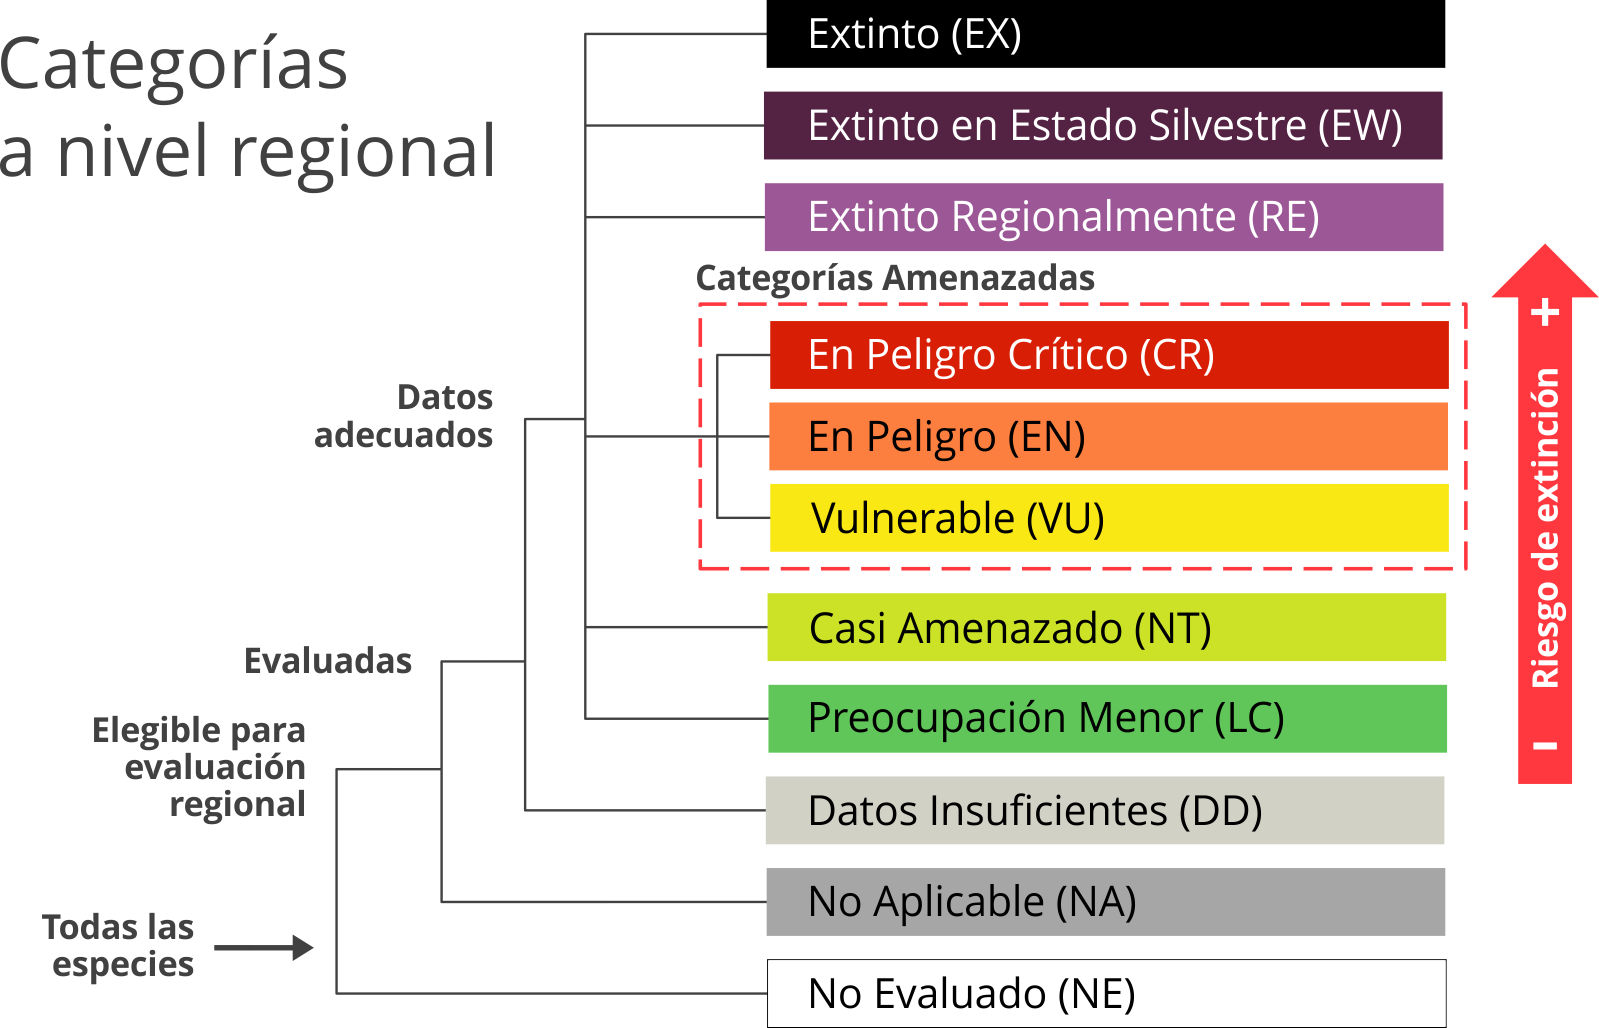 Categorías de conservación de especies a nivel regional (UICN)